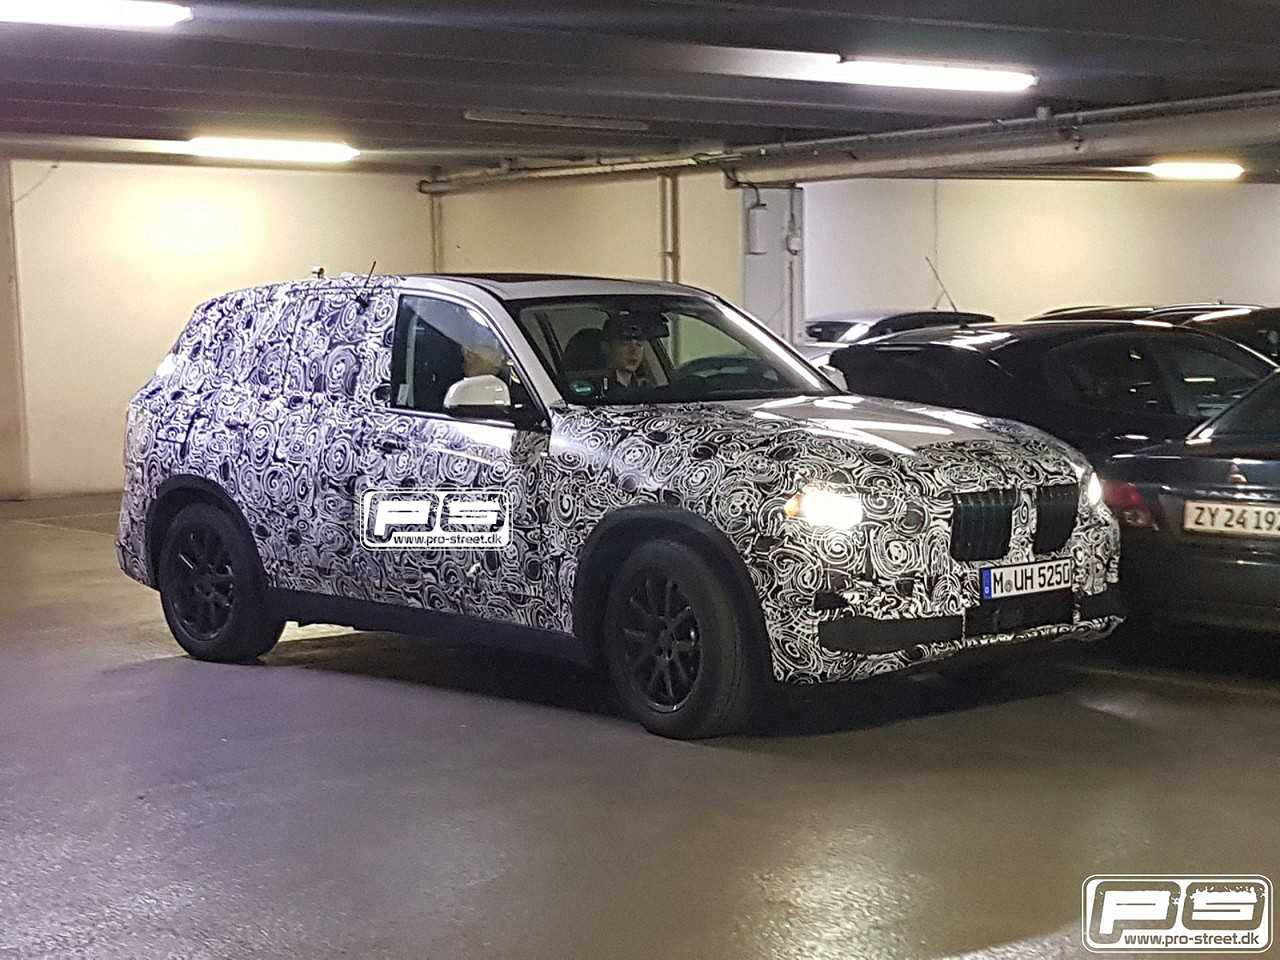 Nova gerao do BMW X5 realizando testes finais de validao (imagens: Pro-Street.dk)